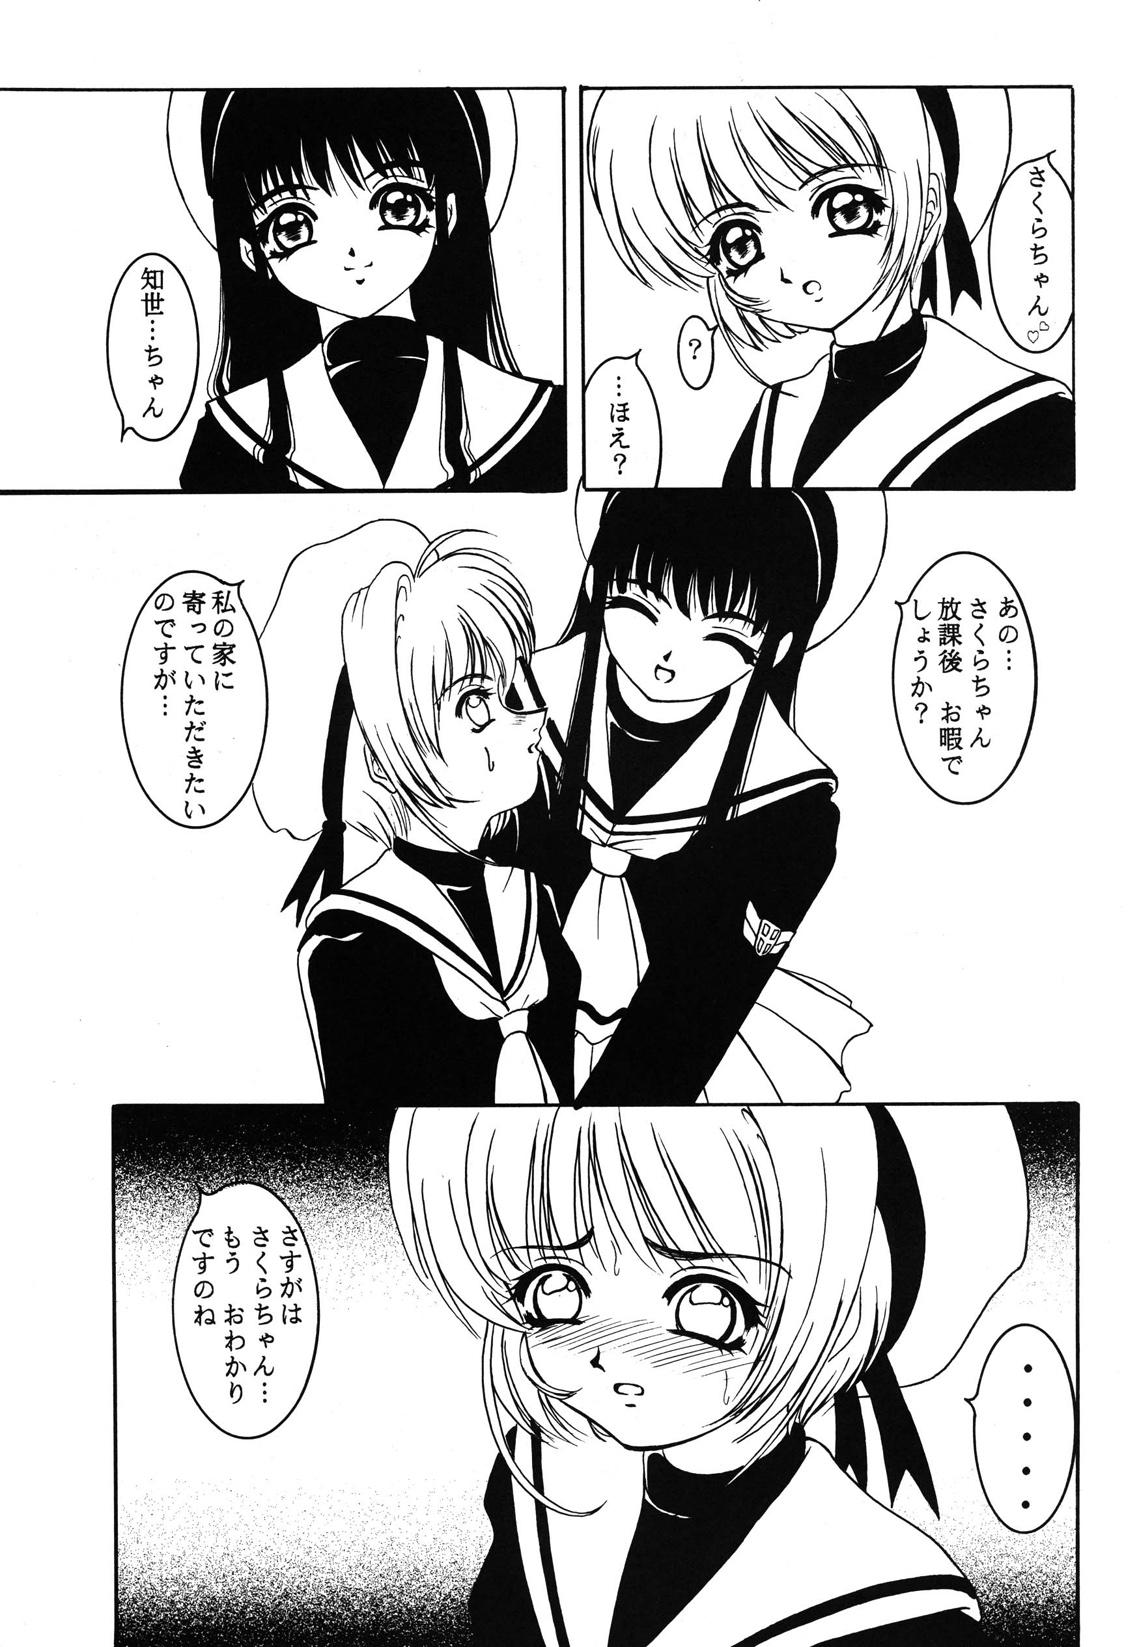 Culos Hana ni Arashi no Rei hemo Aruzo - Cardcaptor sakura Phat - Page 4